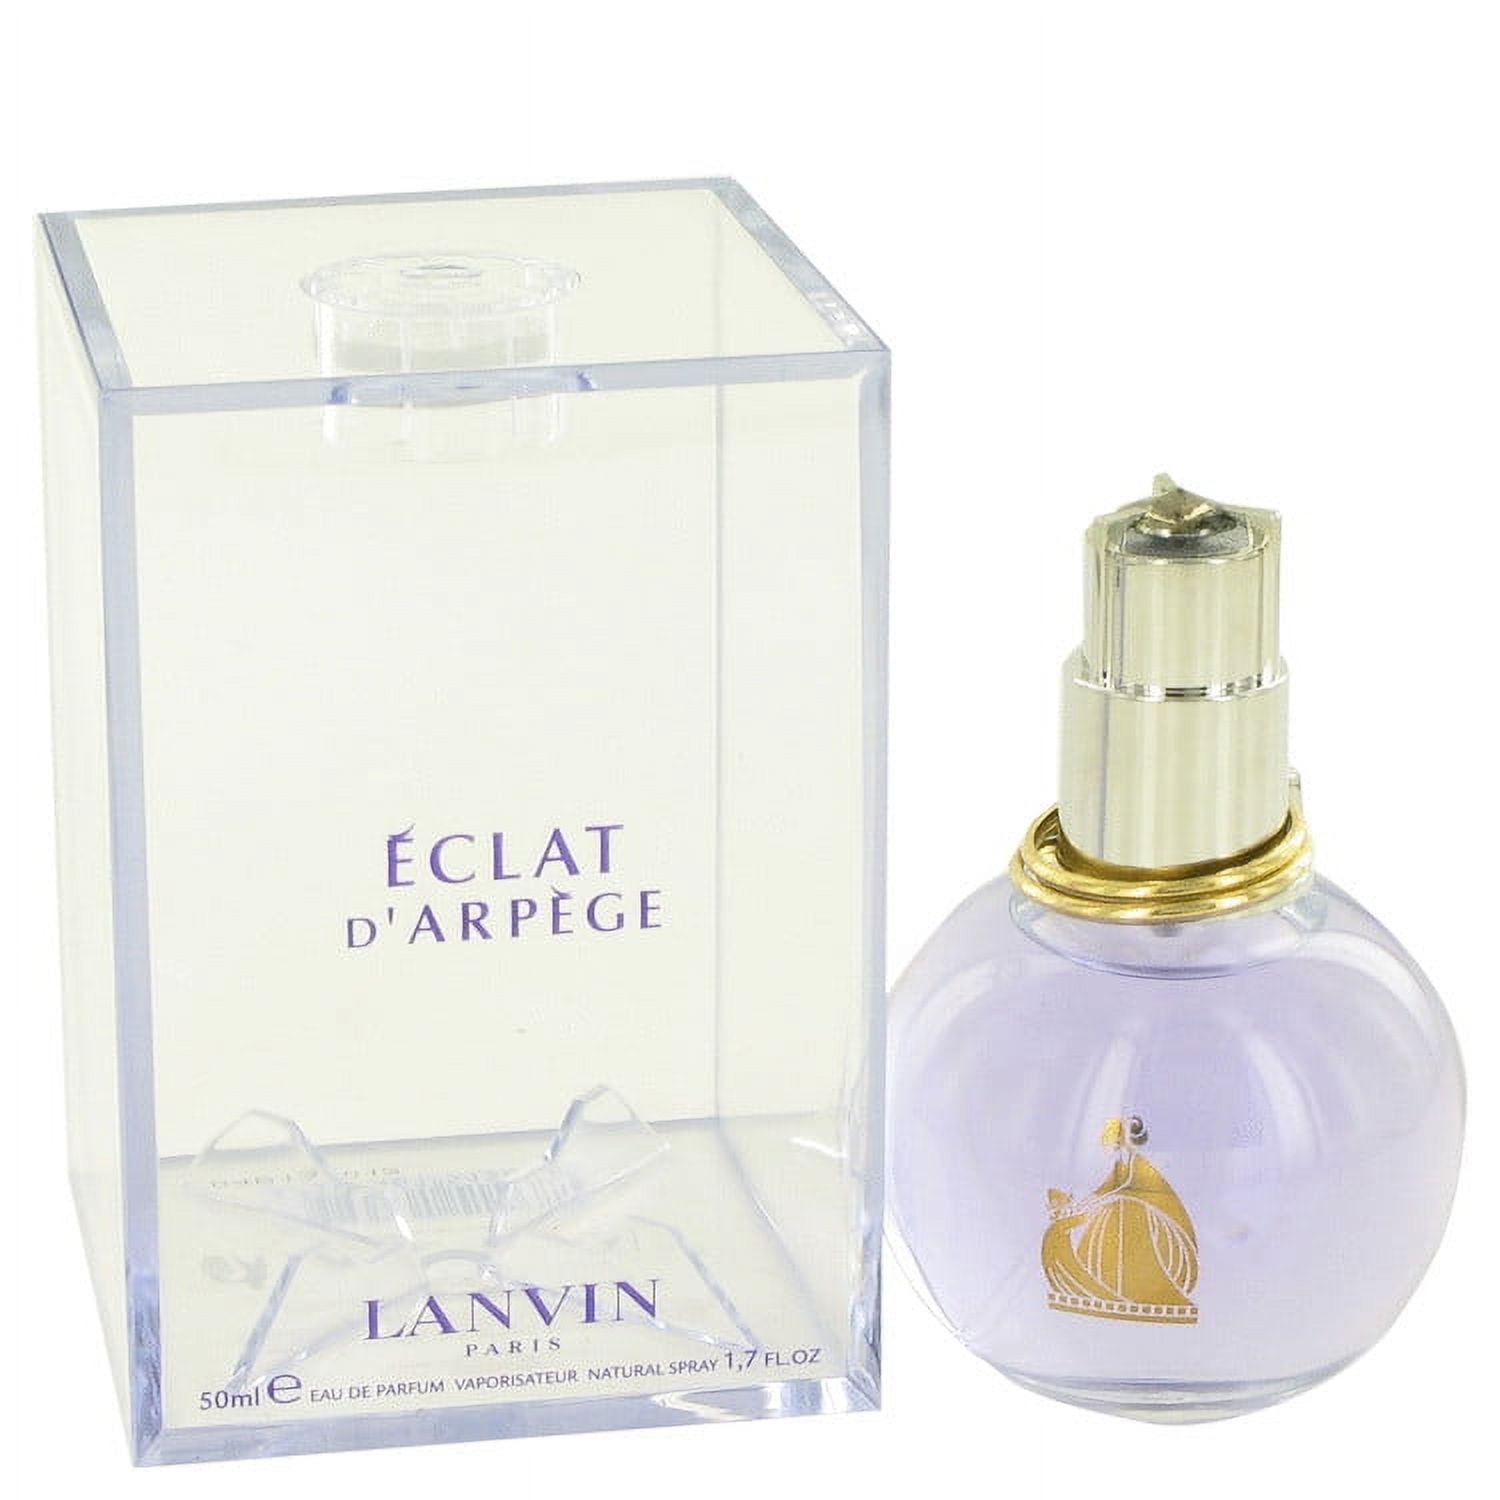 Eclat D'arpege by Lanvin - Buy online